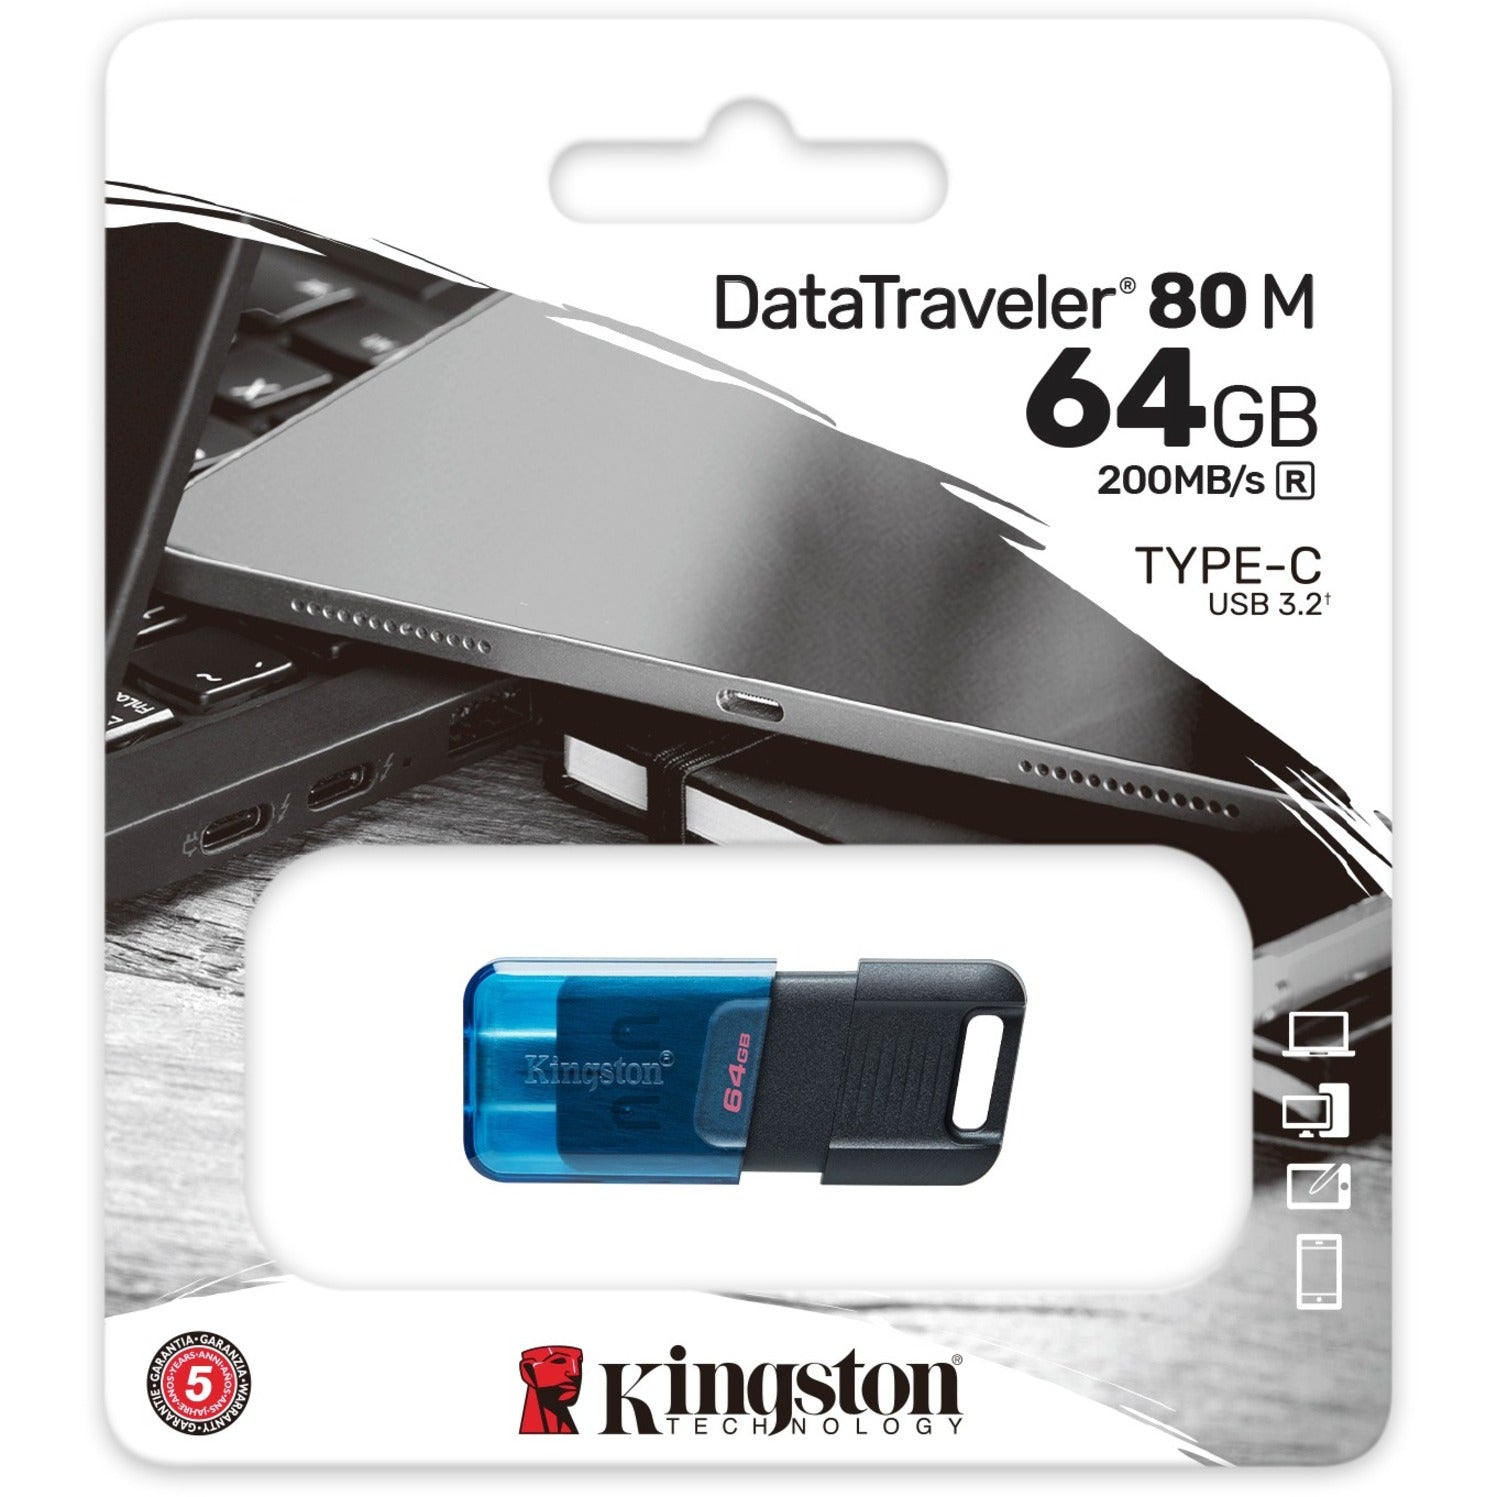 Kingston DT80M/64GB DataTraveler 80 M USB-C Flash Drive, 64GB Storage, 200MB/s Speed